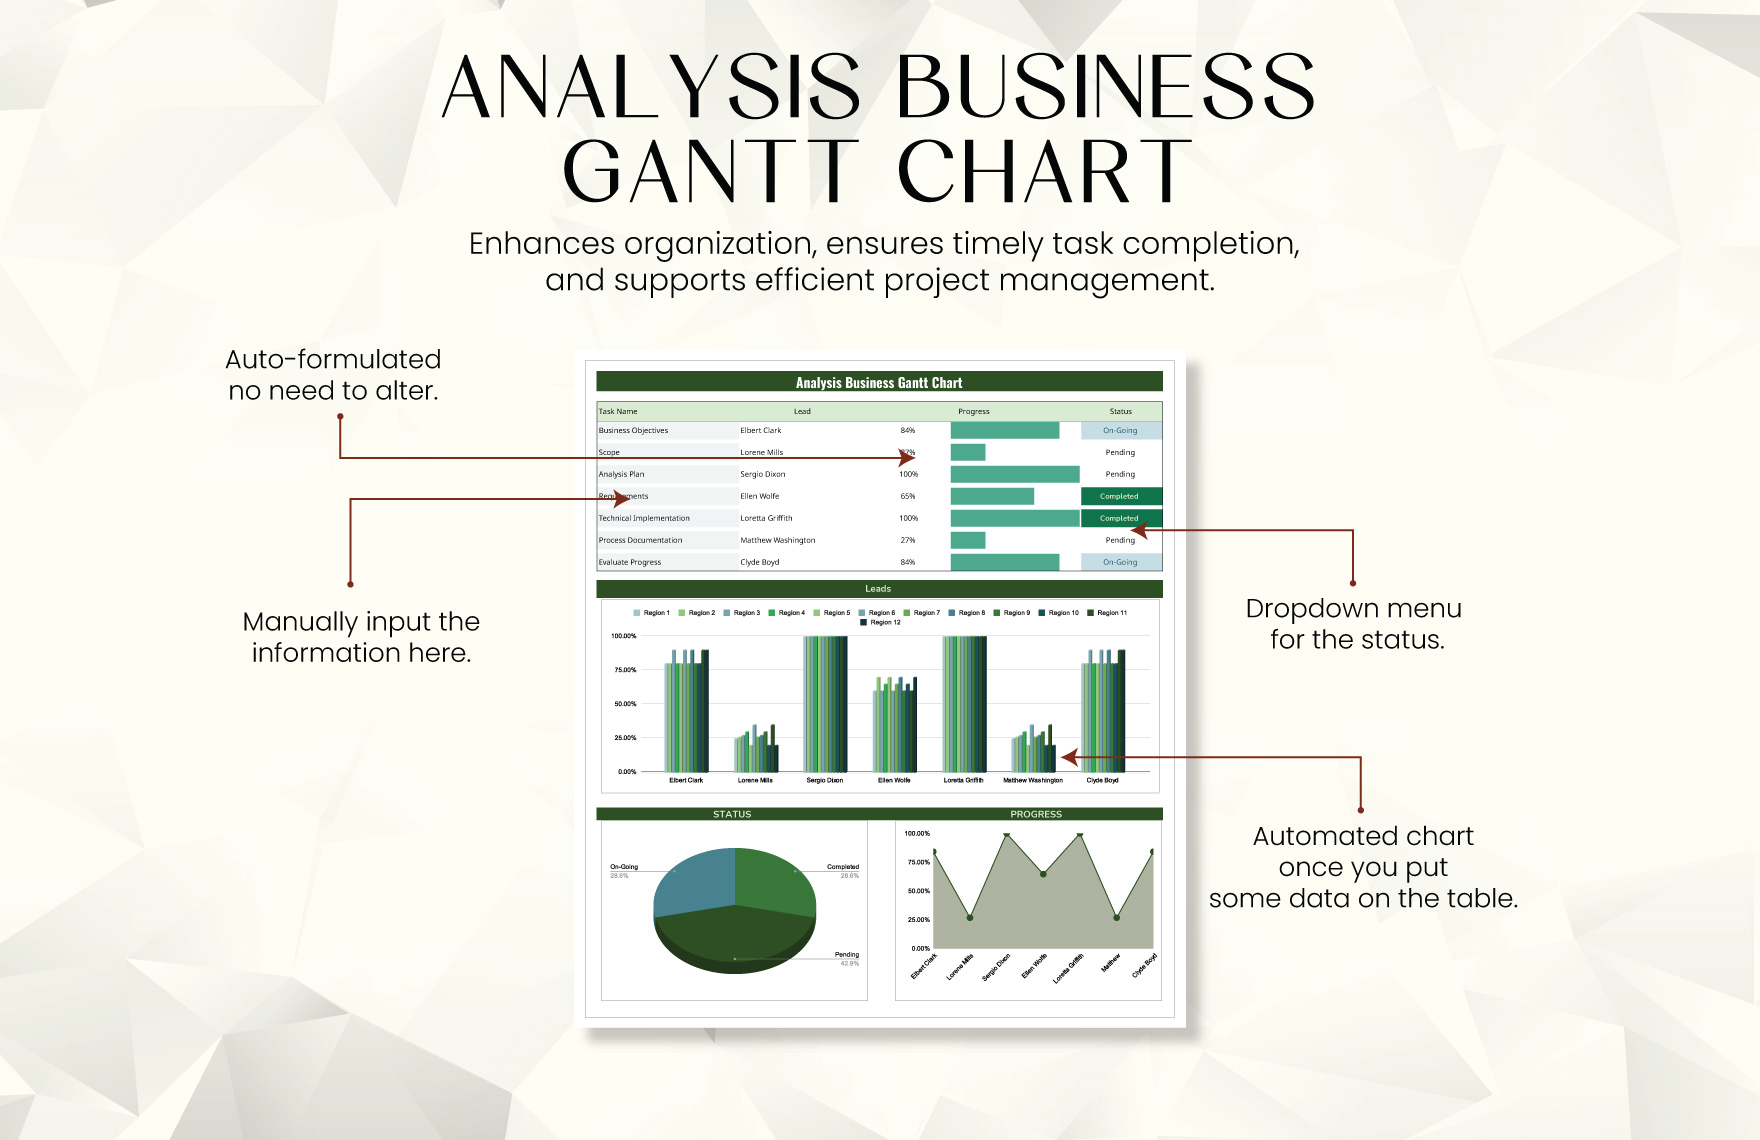 Analysis Business Gantt Chart Template